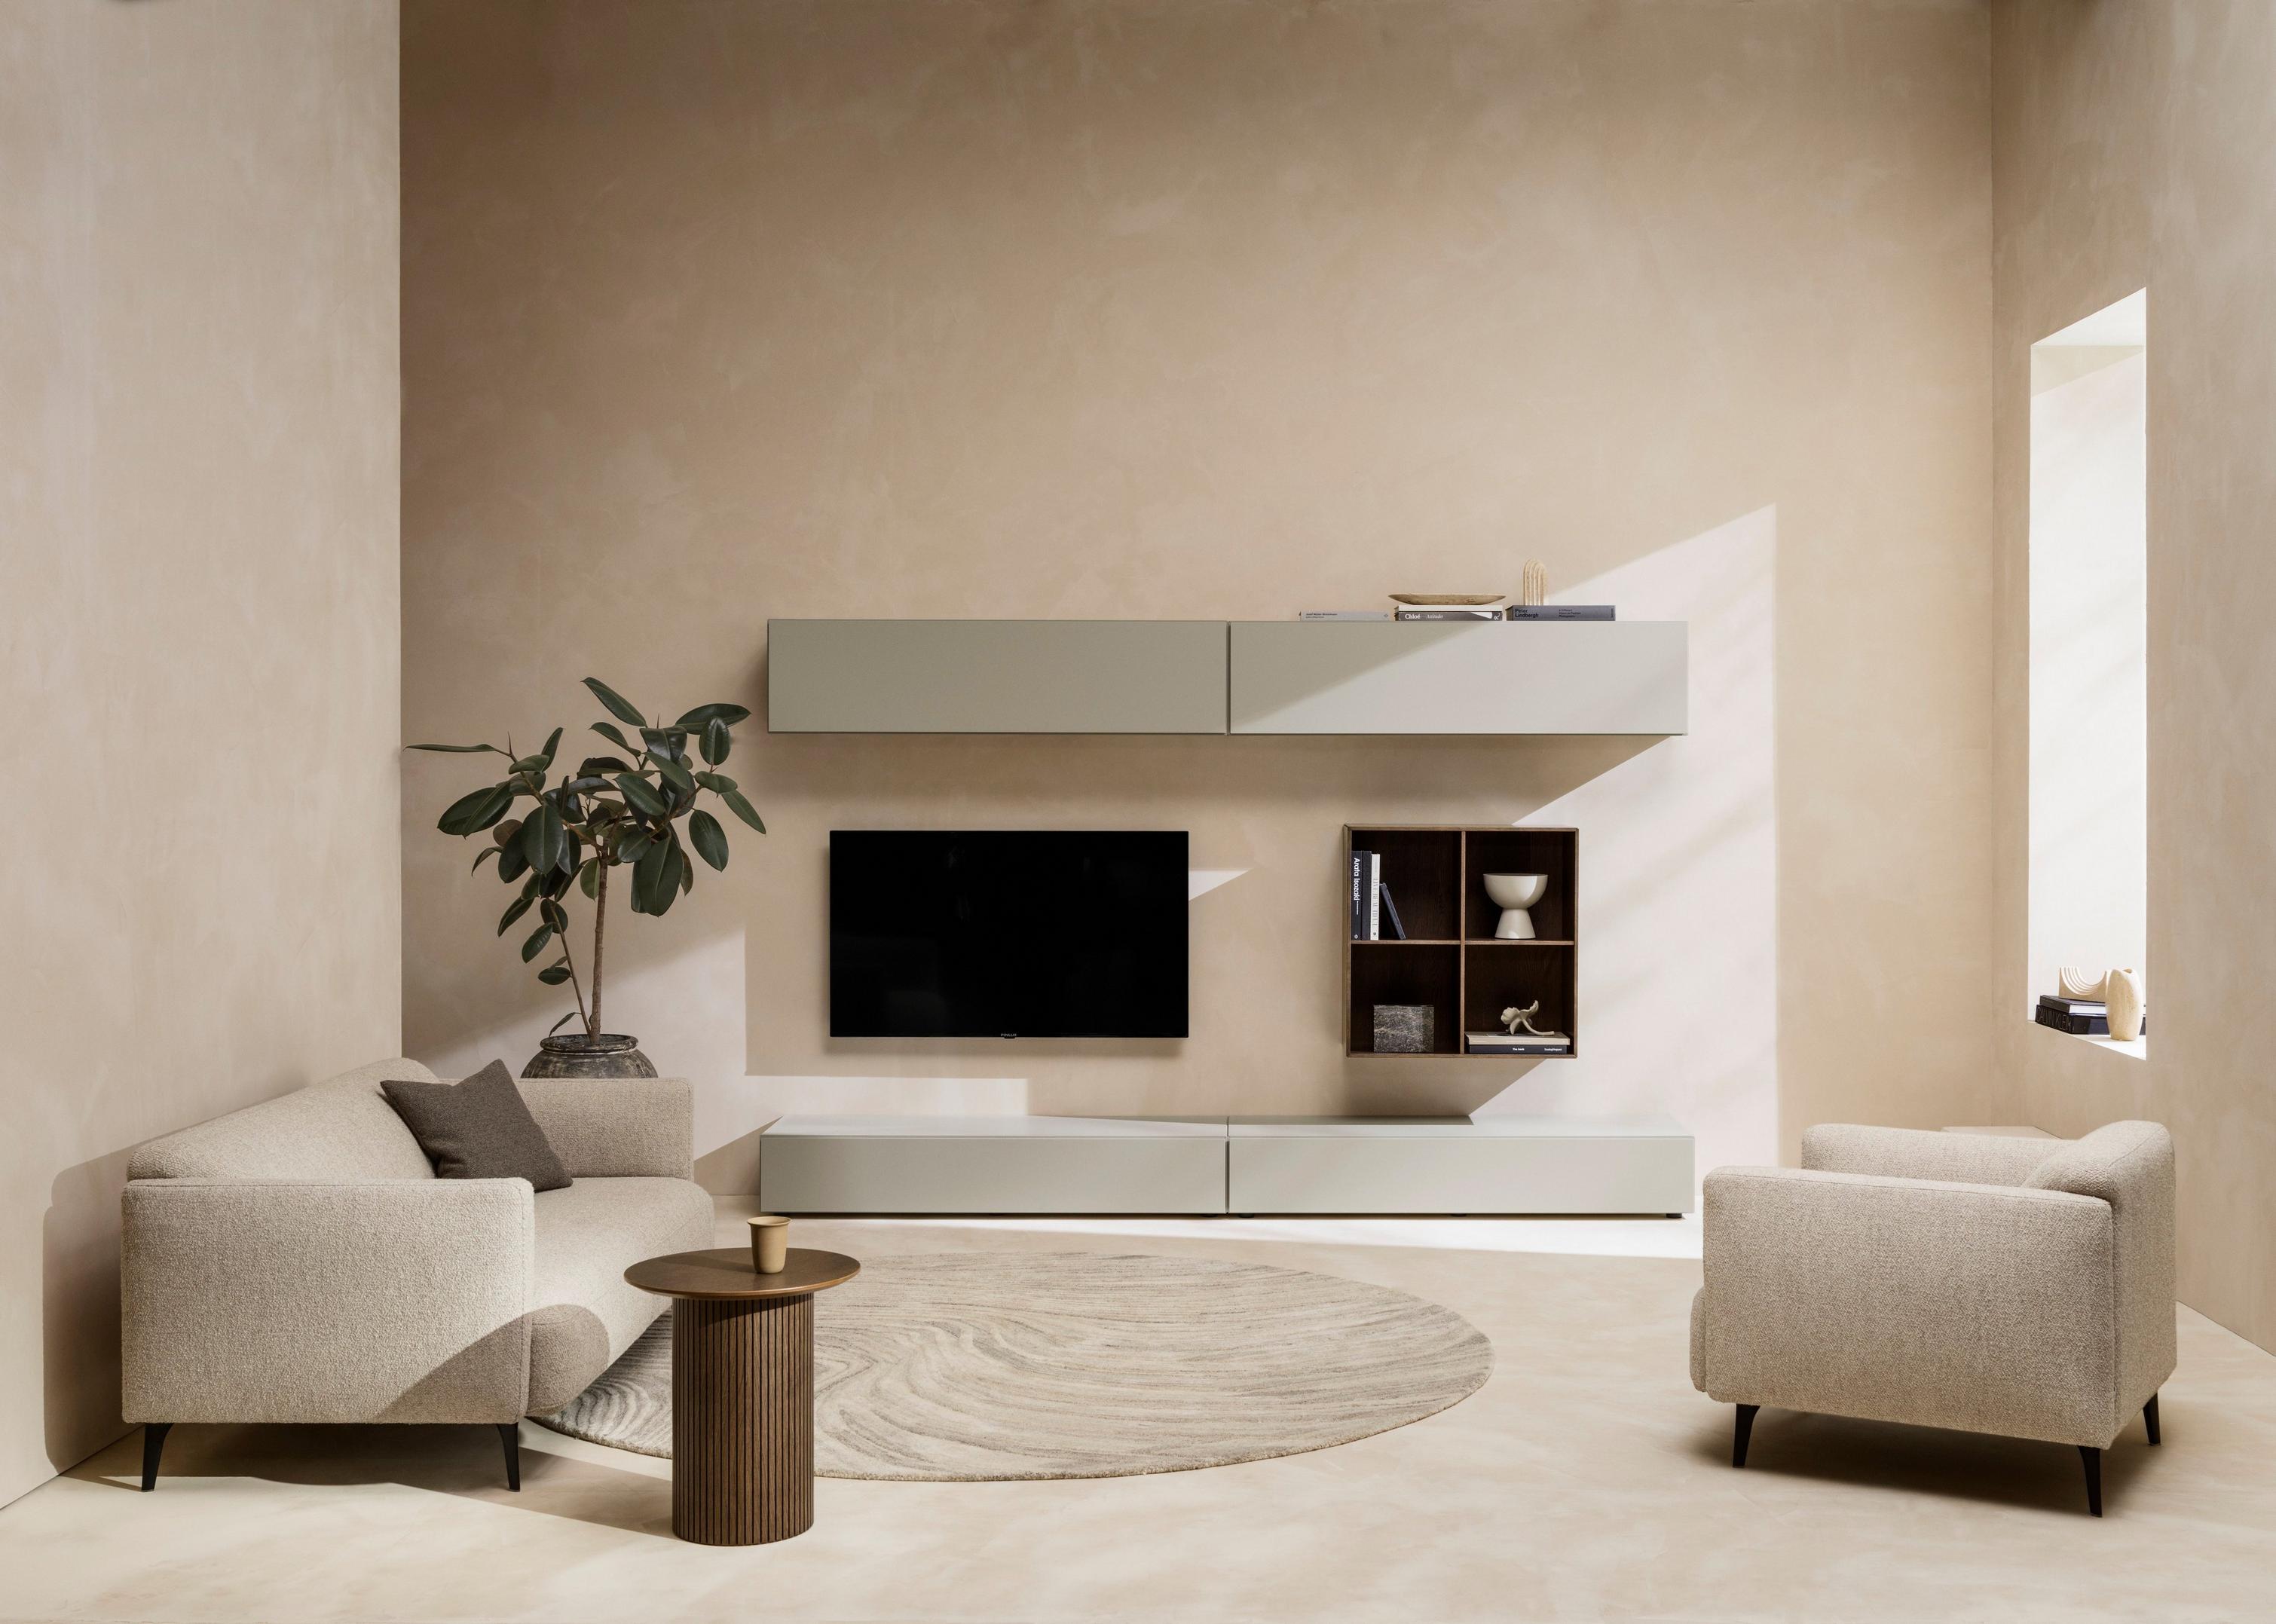 Stue indrettet i en neutral farvepalet med rundt Santiago sofabord, der indbyder til afslapning.